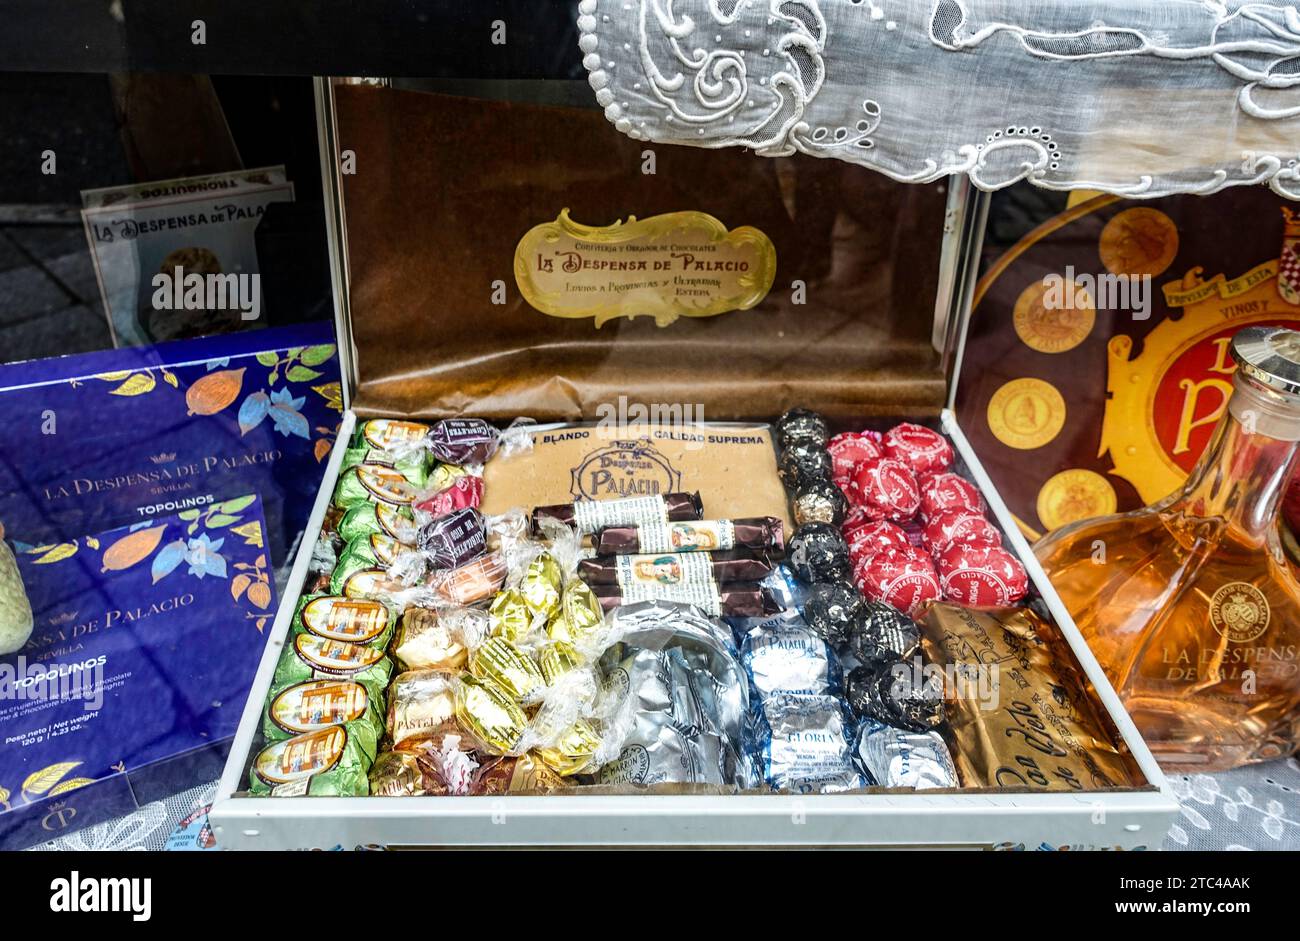 Un'elegante esposizione di caramelle e dolci tradizionali assortiti in un pacchetto regalo esposto a Despensa de Palacio, Siviglia, Spagna. Foto Stock